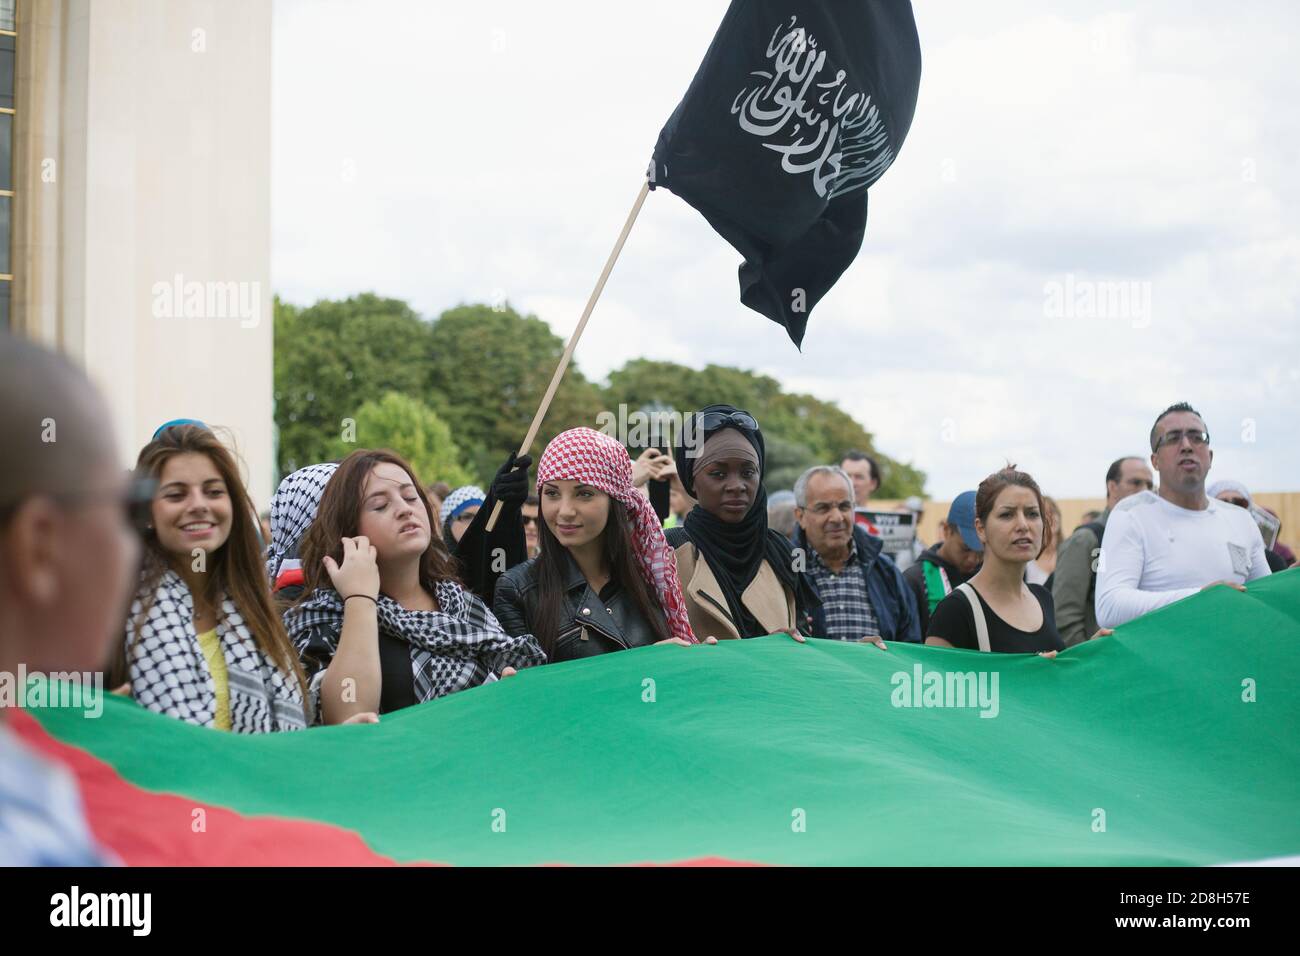 Daeh bandiere nere dello Stato islamico in un pro-palestinese Dimostrazione a Parigi Trocadero Francia Foto Stock